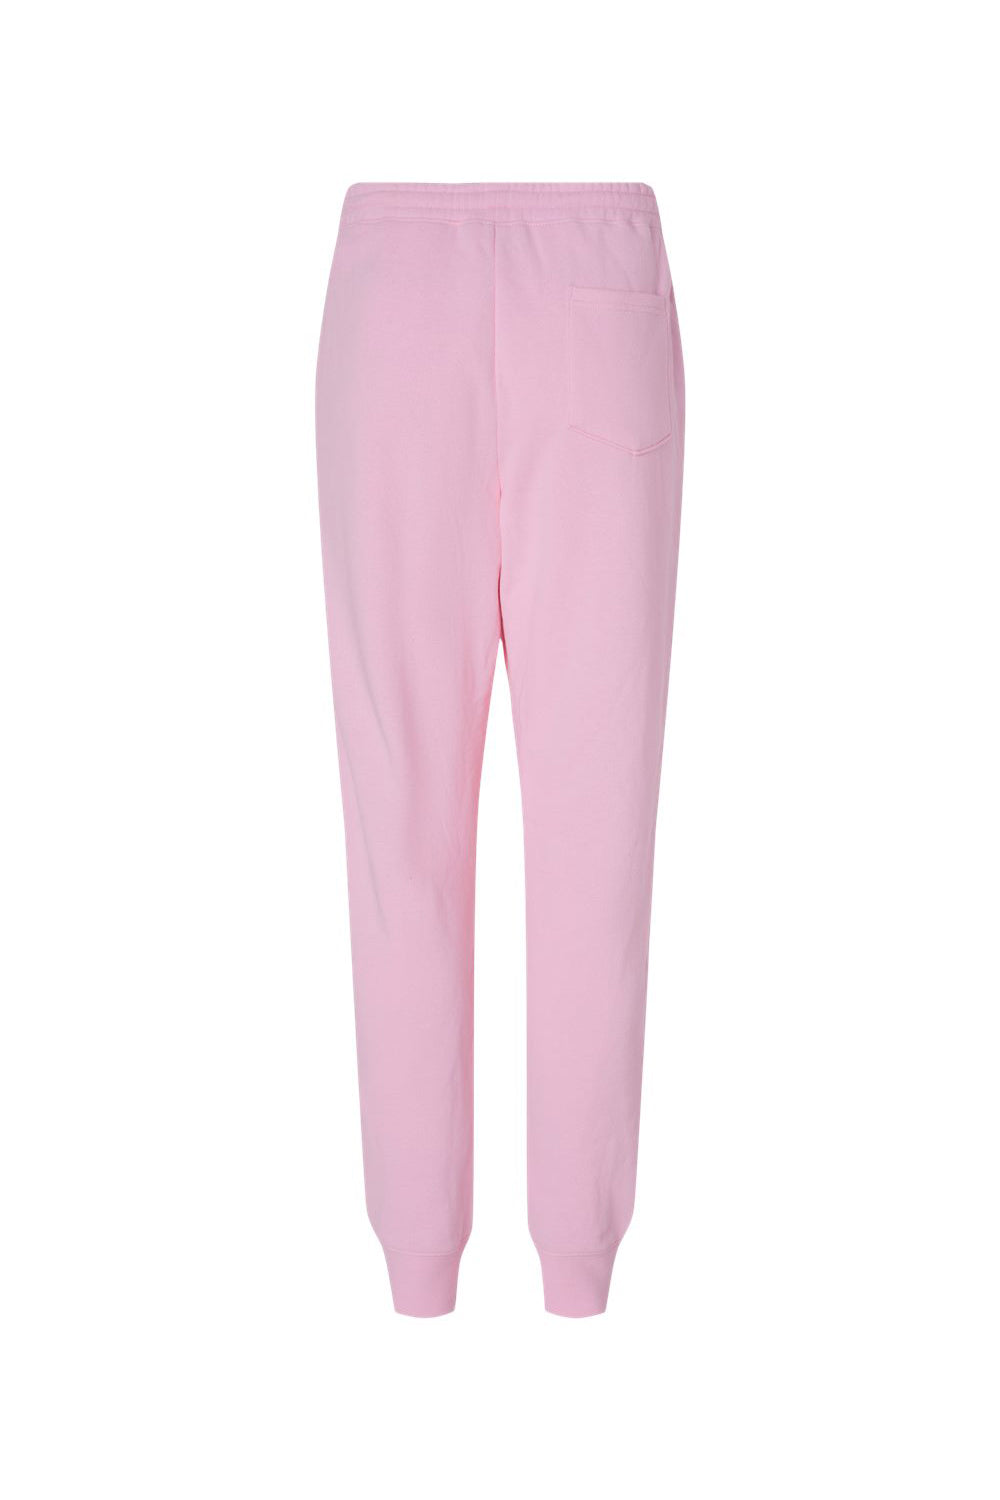 Independent Trading Co. IND20PNT Mens Fleece Sweatpants w/ Pockets Light Pink Flat Back